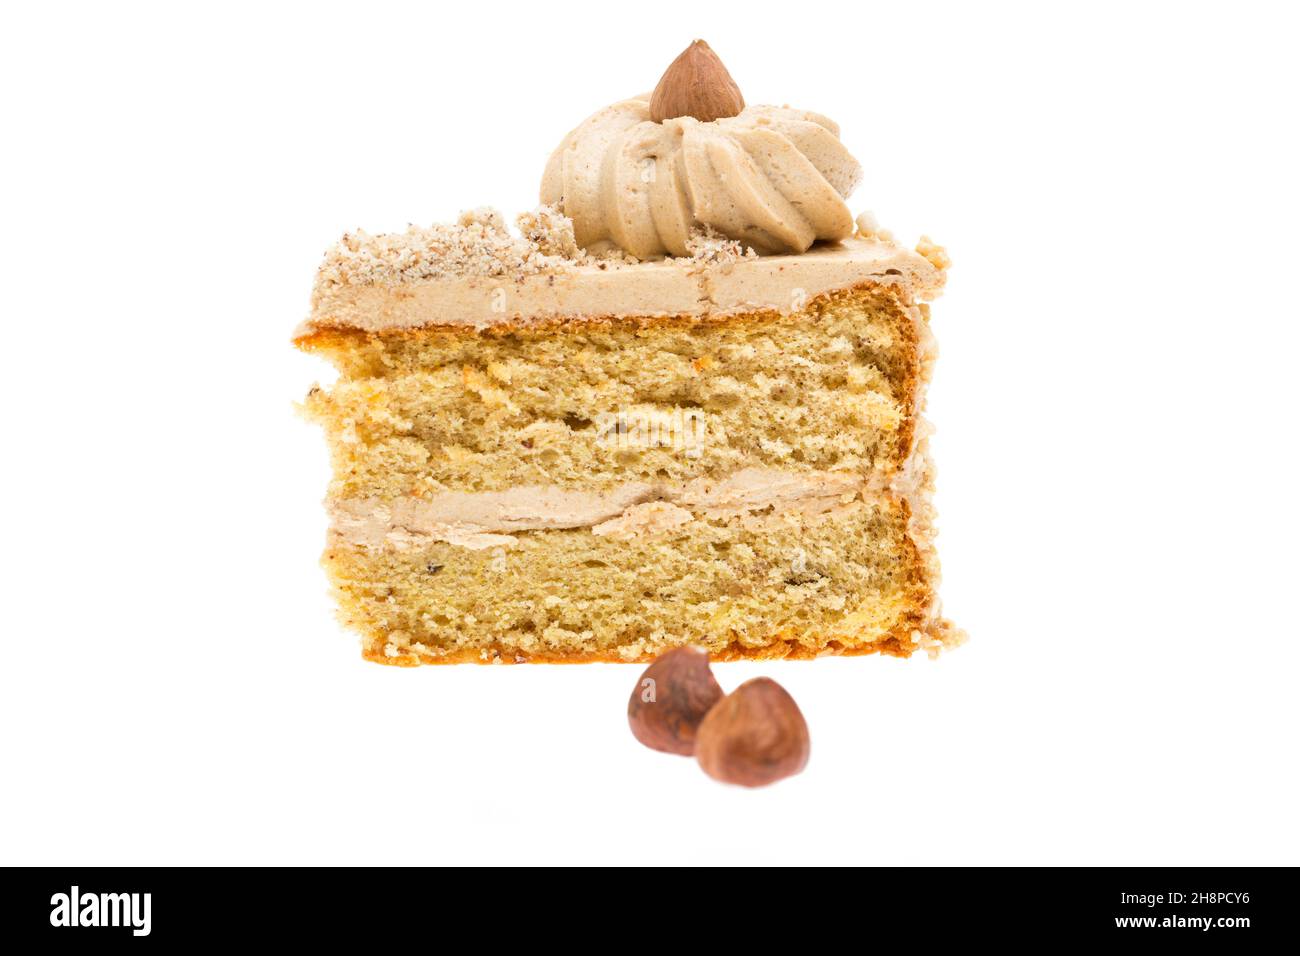 un petit morceau de gâteau aux noix avec des noix à l'avant isolé sur fond blanc un, morceau, noix, tarte, gâteau,Gâteau aux noix, fond blanc, noisette Banque D'Images